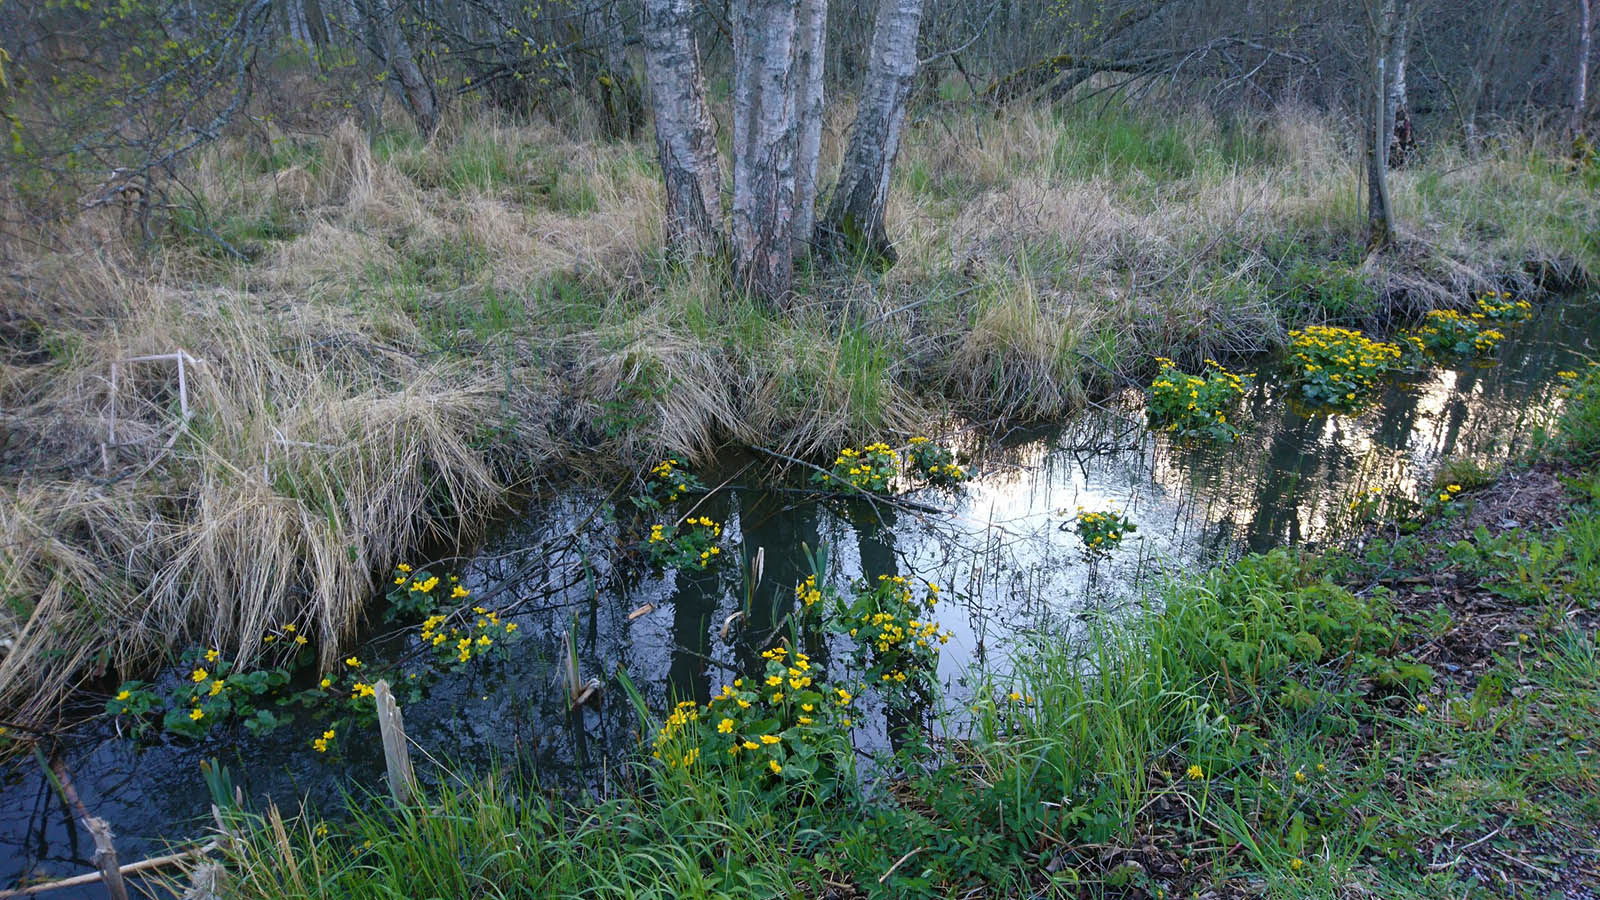 Калужница болотная (Caltha palustris) в природном парке J?rvaf?ltet, Стокгольм. Май 2020 года. Автор фото: Сутормина Марина